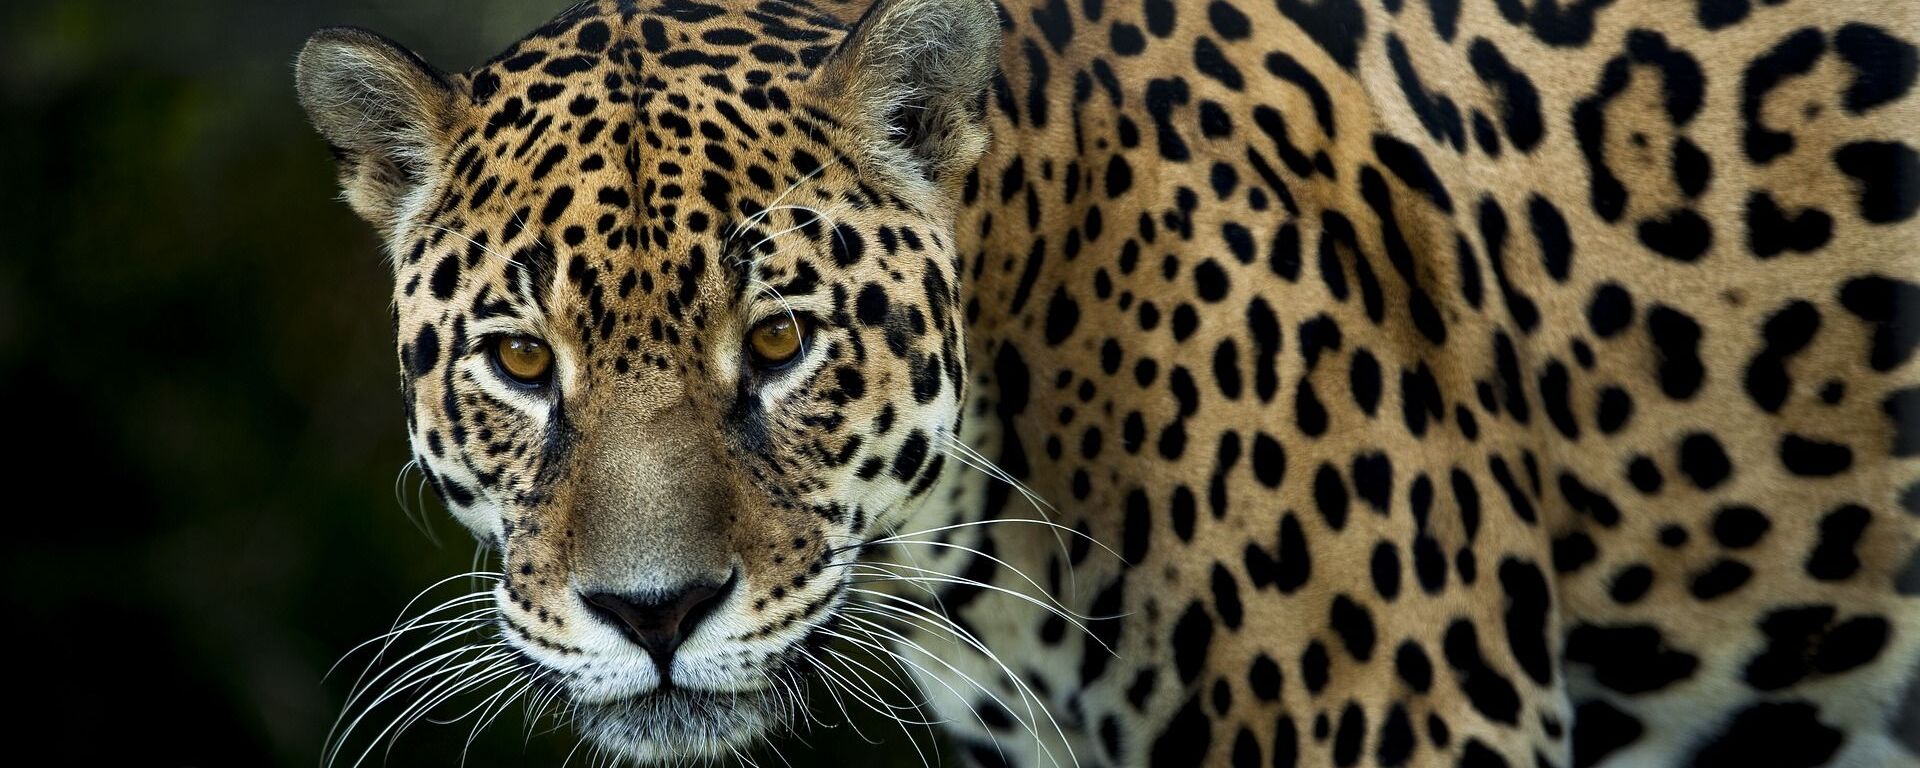 Un jaguar (imagen referencial) - Sputnik Mundo, 1920, 06.01.2021